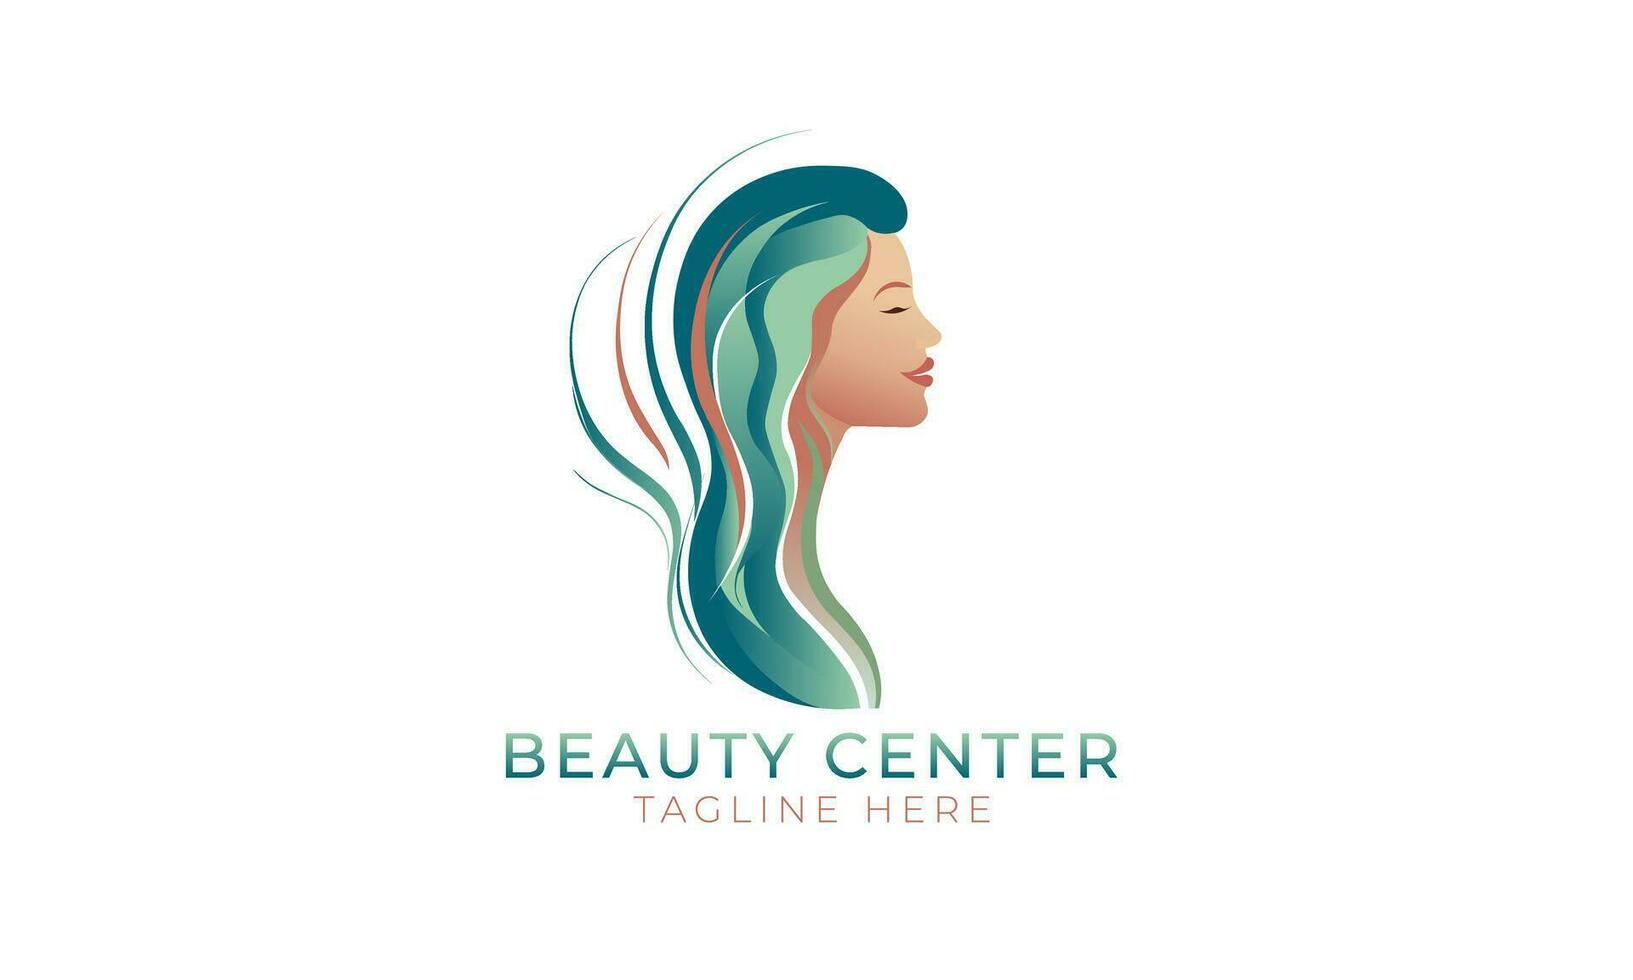 Schönheit Center Logo, Frau Gesicht Seite Aussicht Logo Vorlage eps Datei vektor